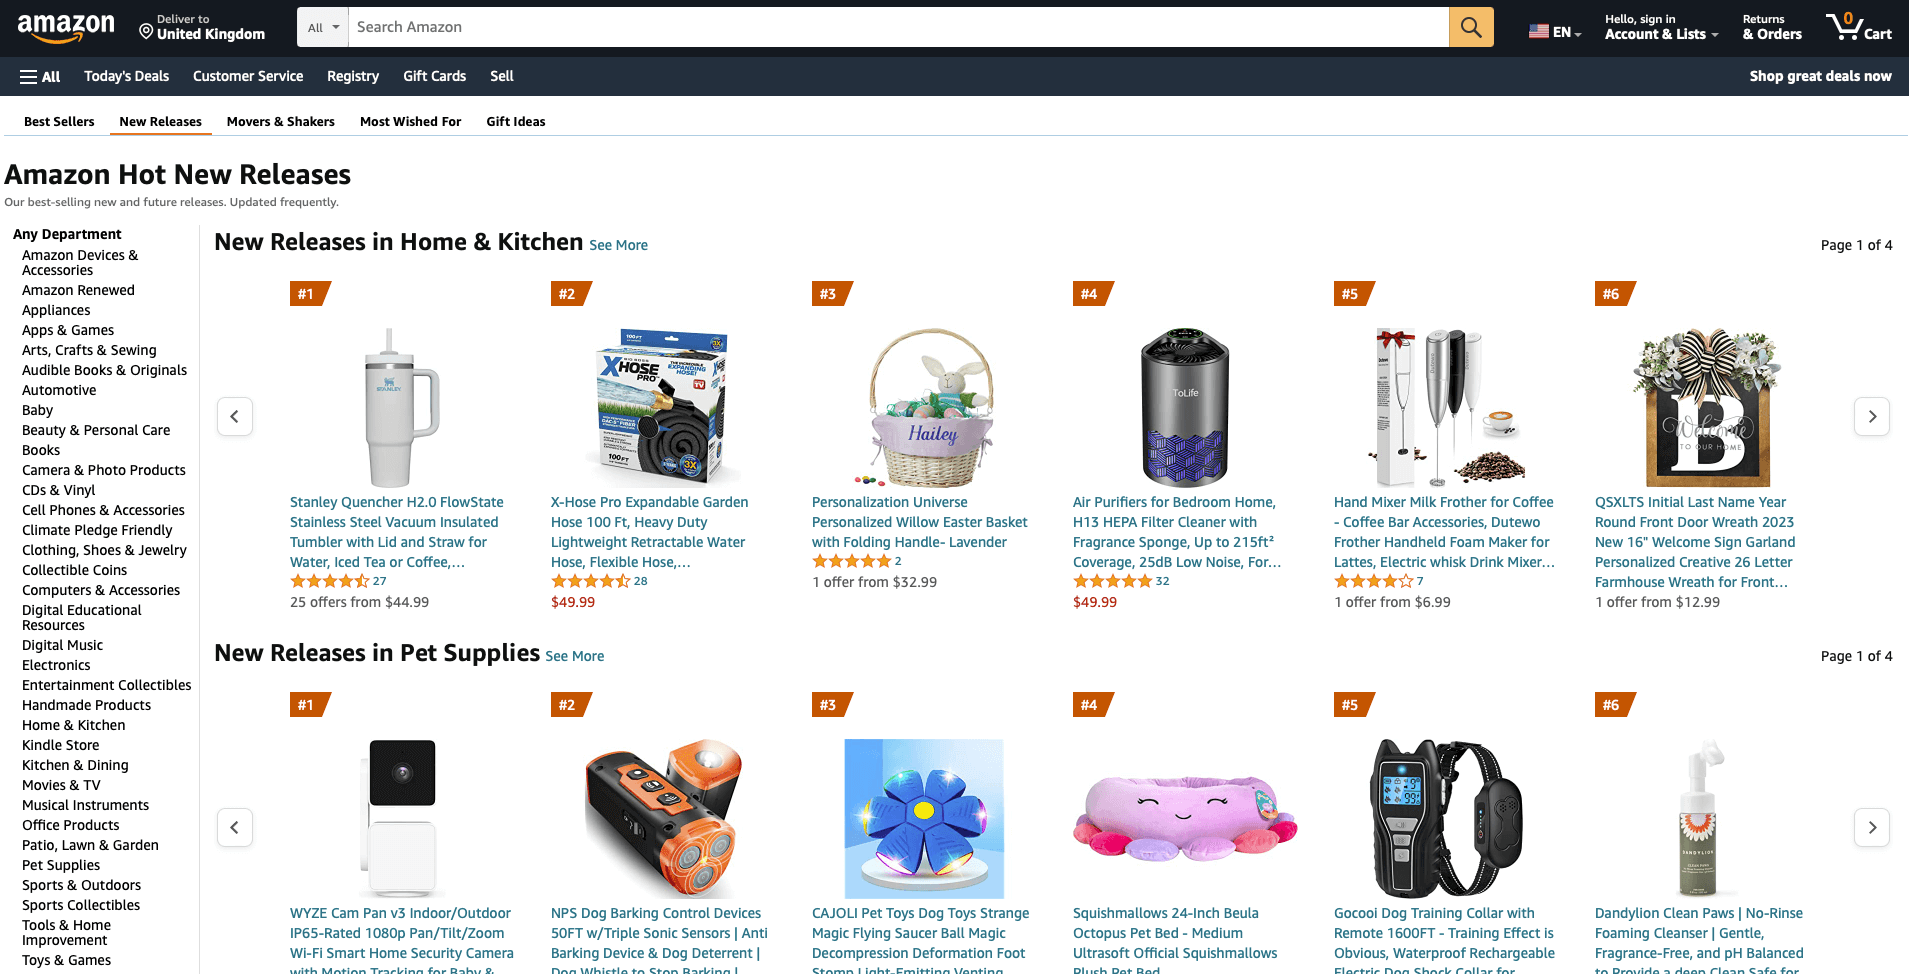 Amazon's new releases